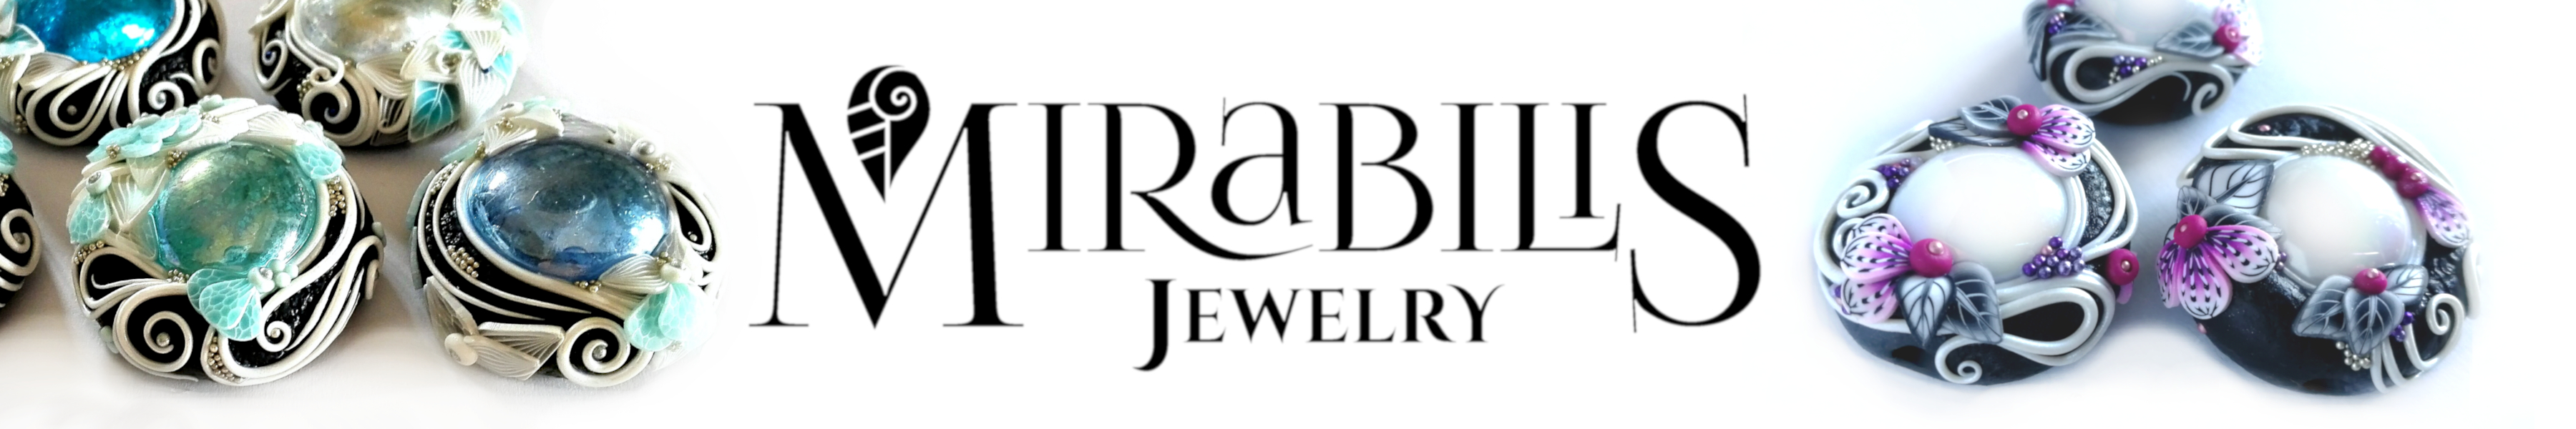 Mirabilis Jewelry